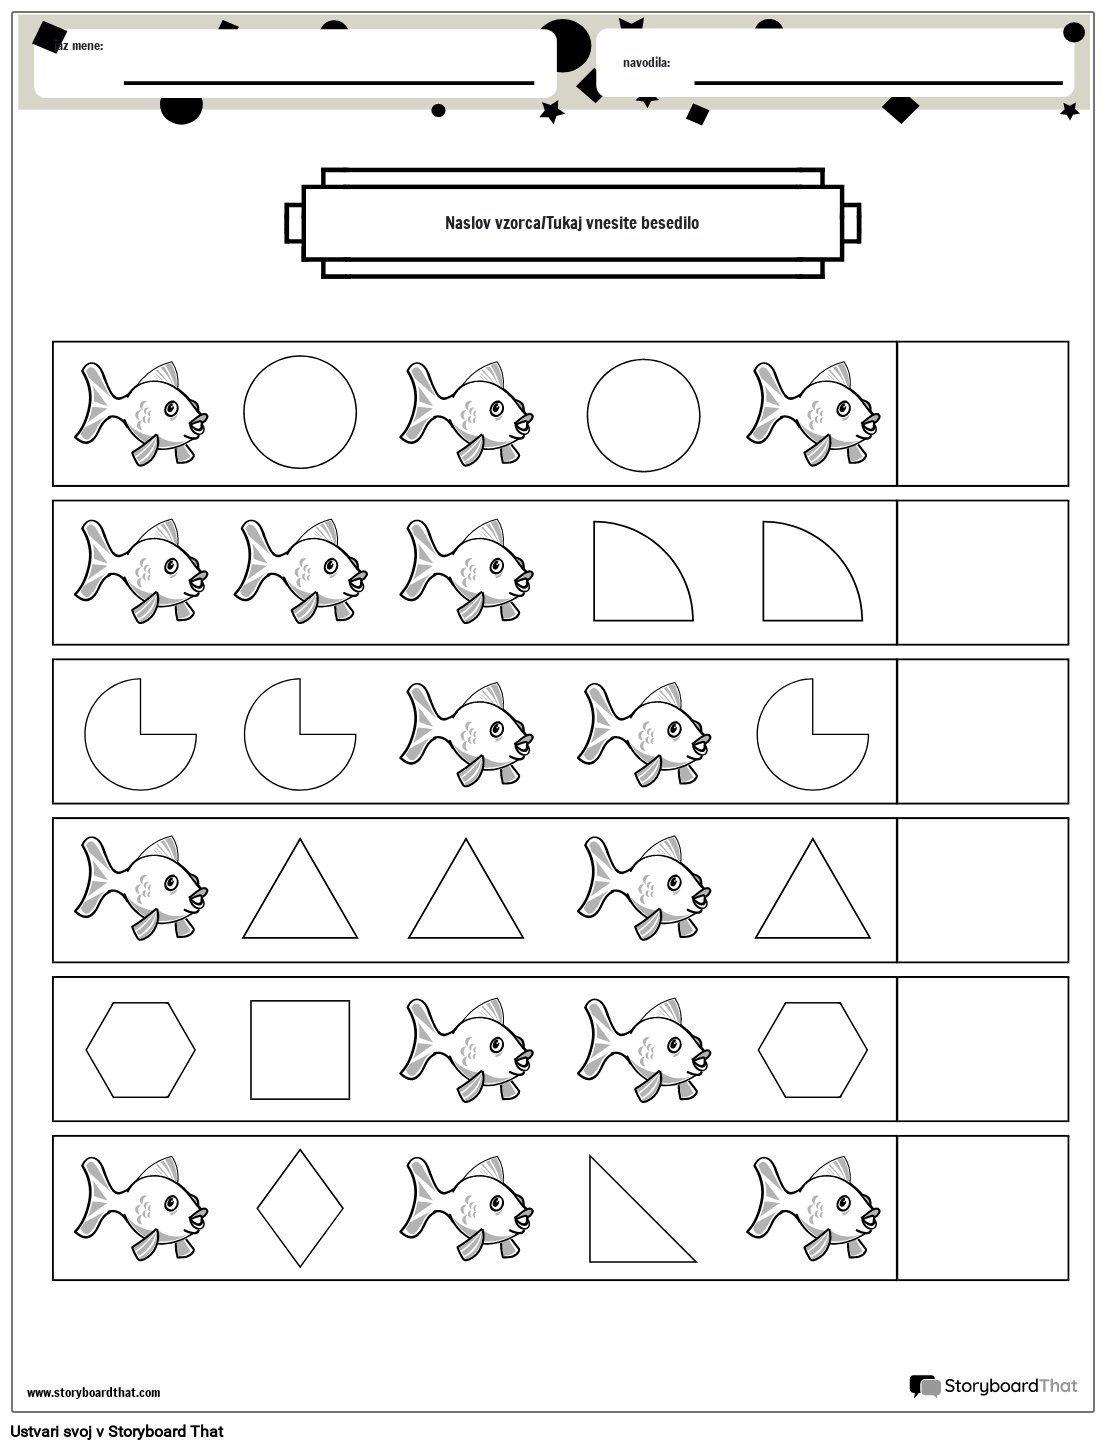 Delovni list z vzorci rib in oblik (črno-bel)